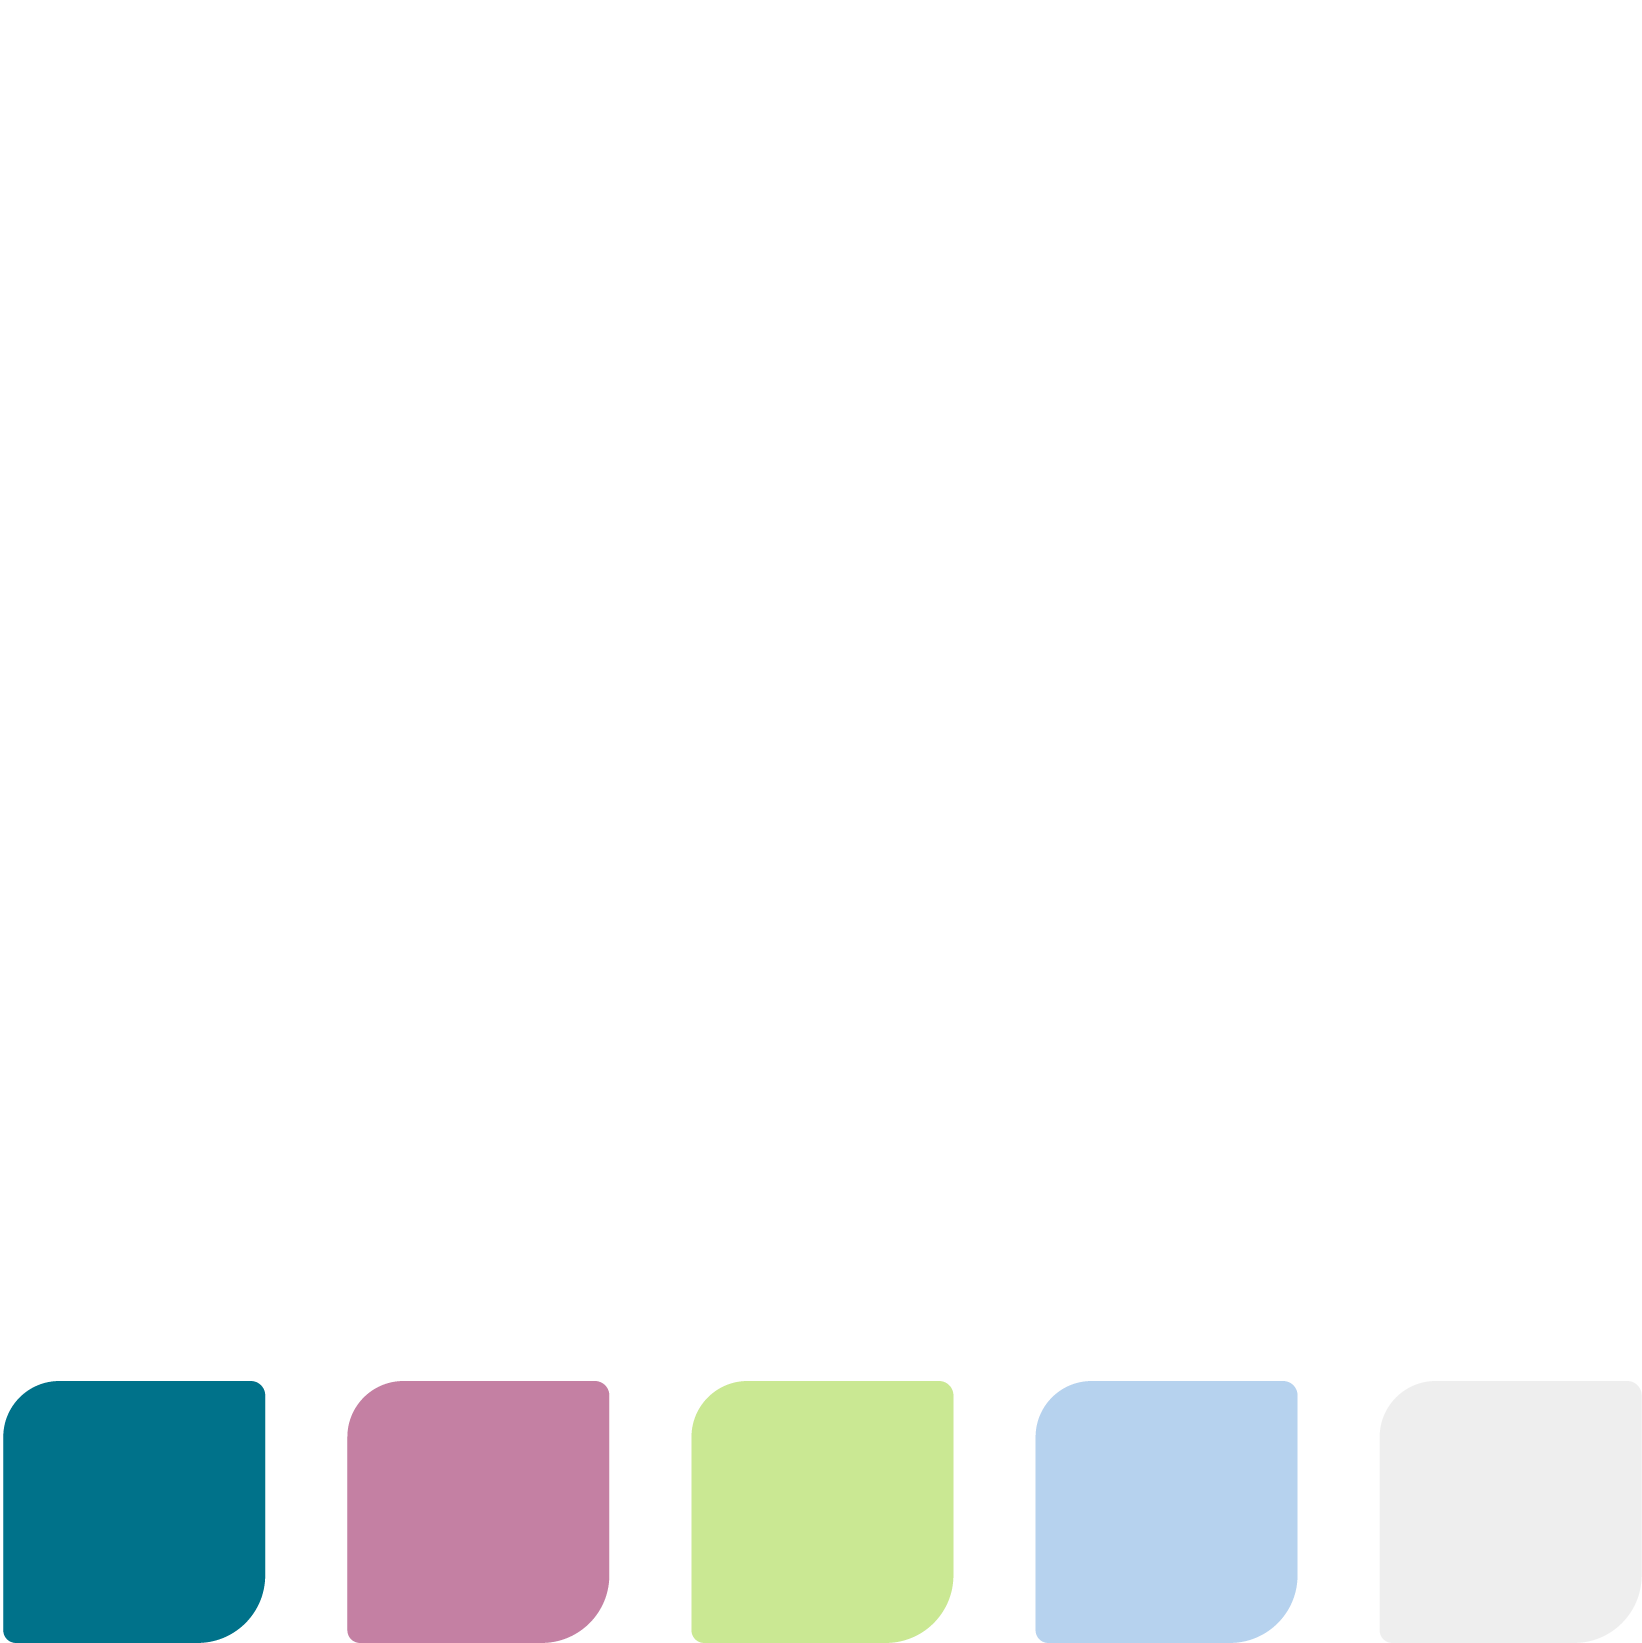 Imagen que muestra paleta de color de sub sistema de identidad visual de la ONG.